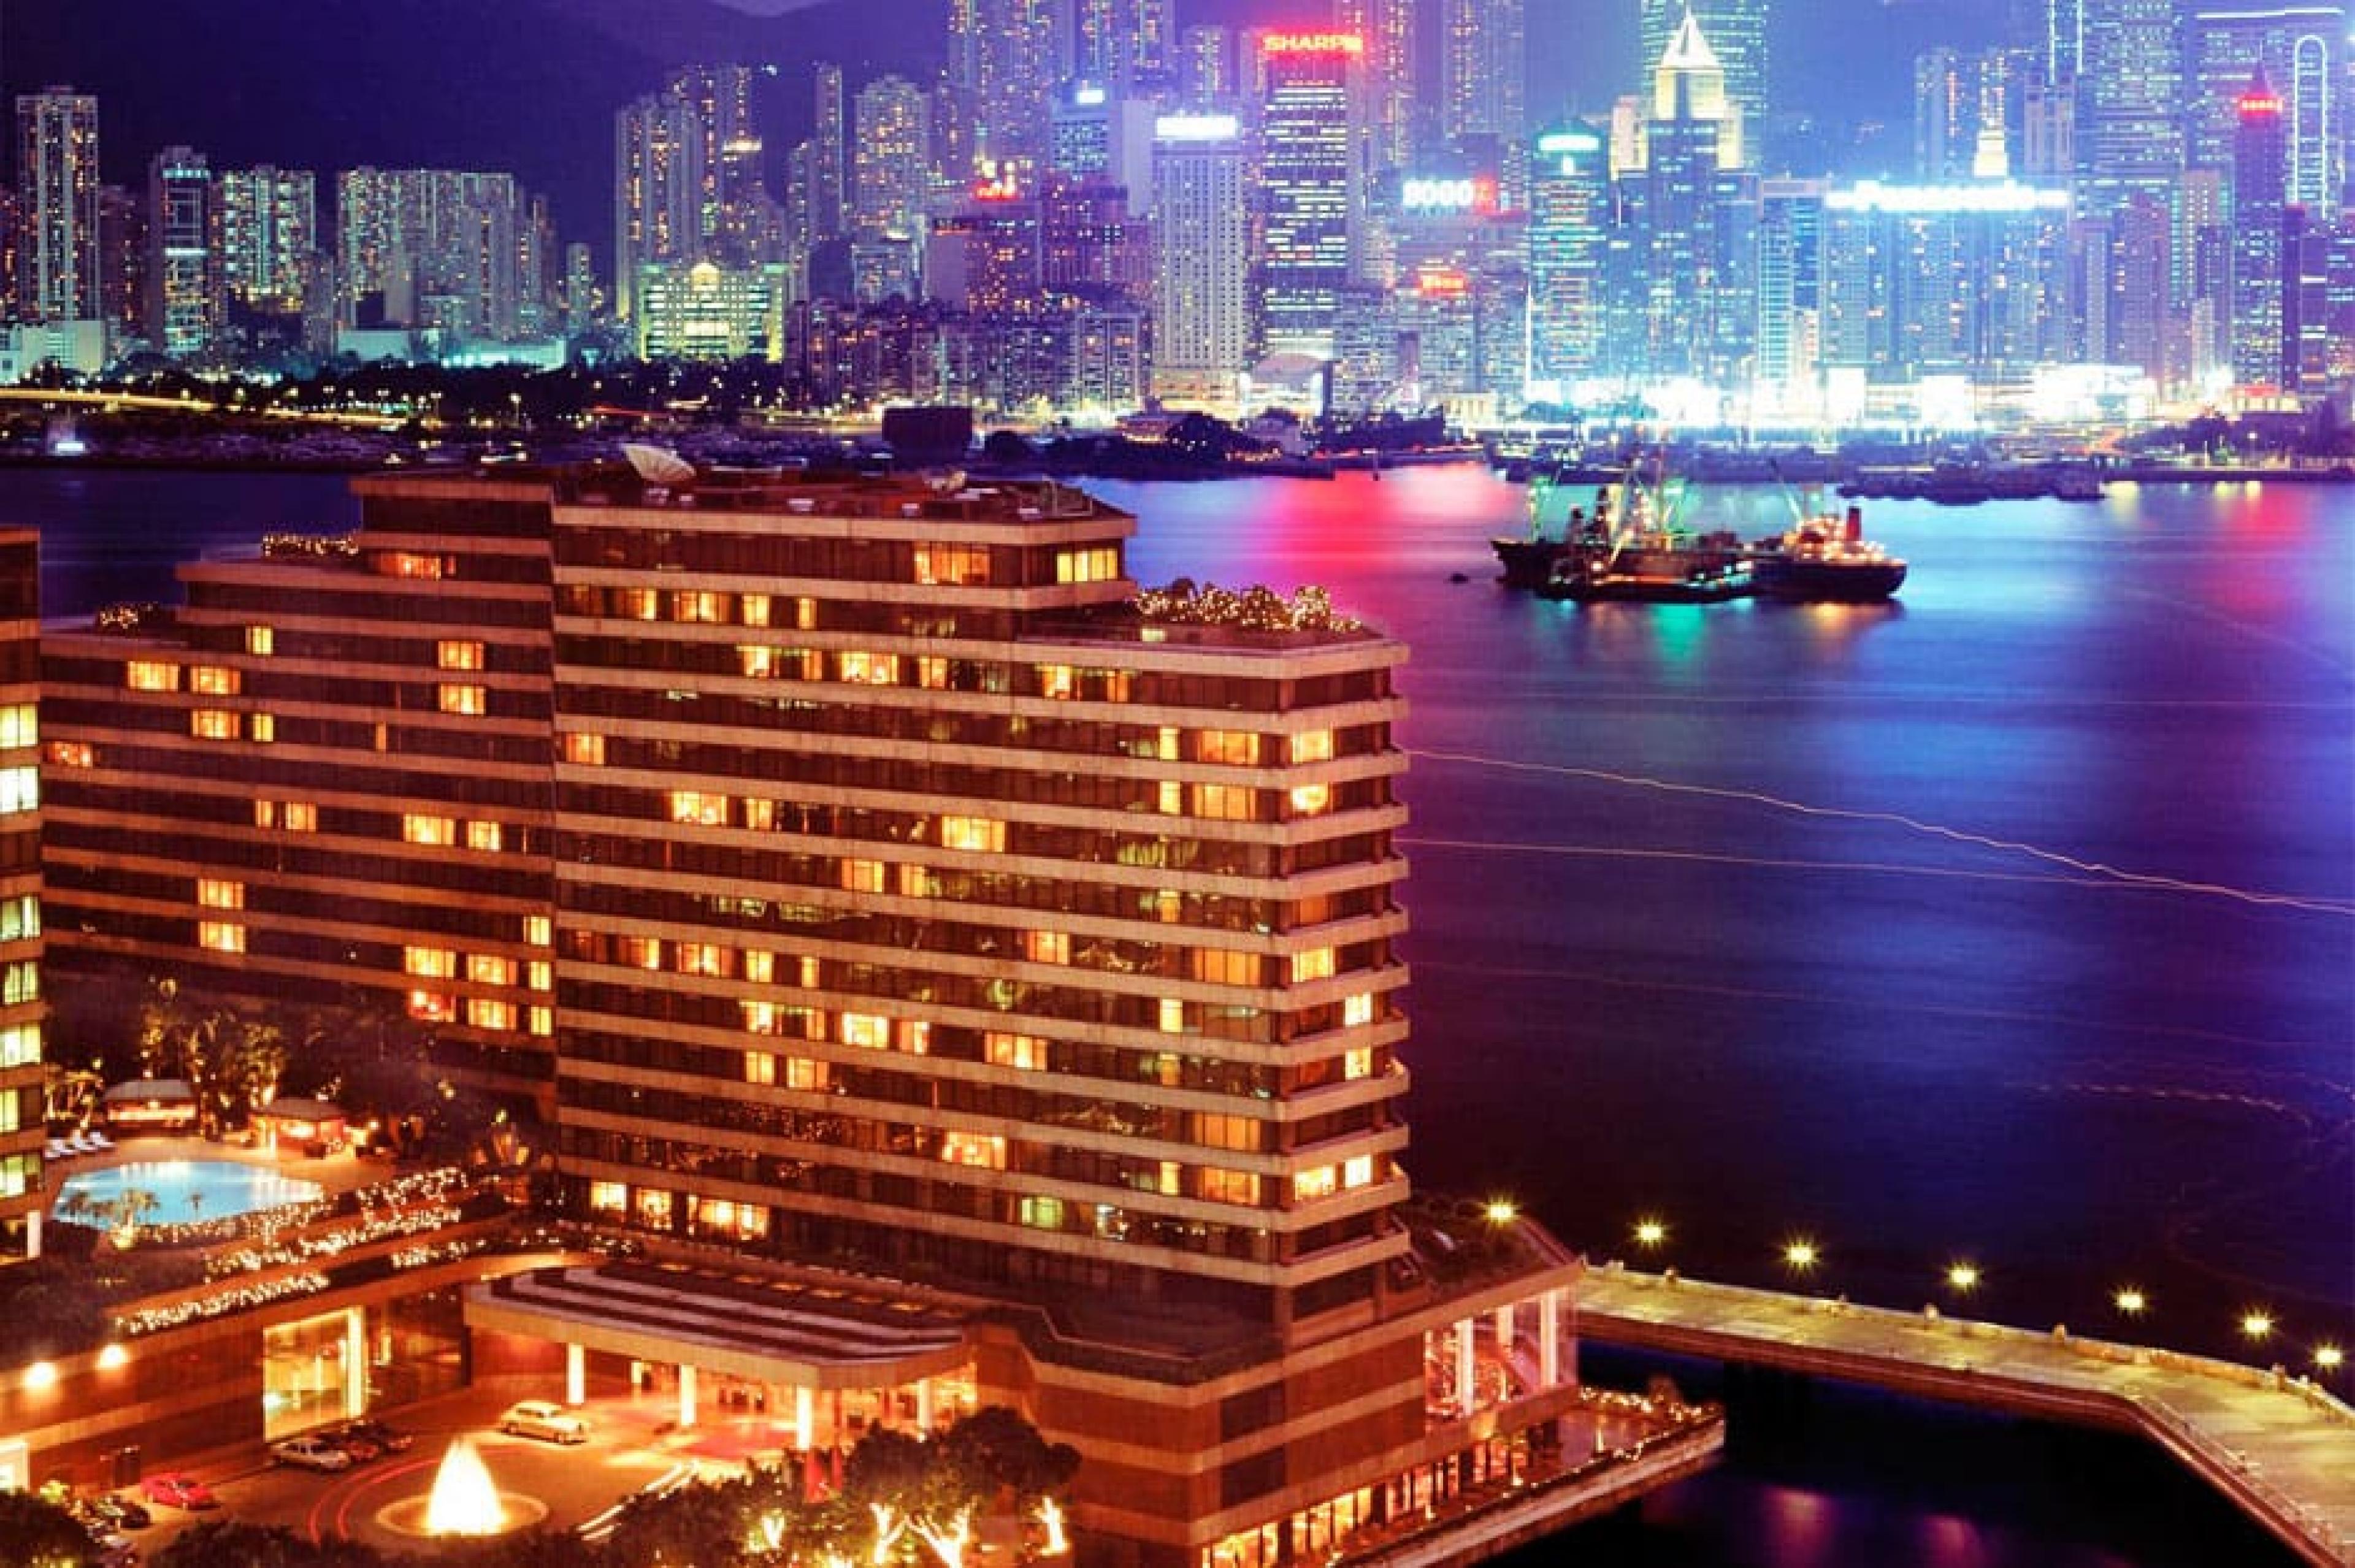 Aerial View - InterContinental Hong Kong, Hong Kong, China